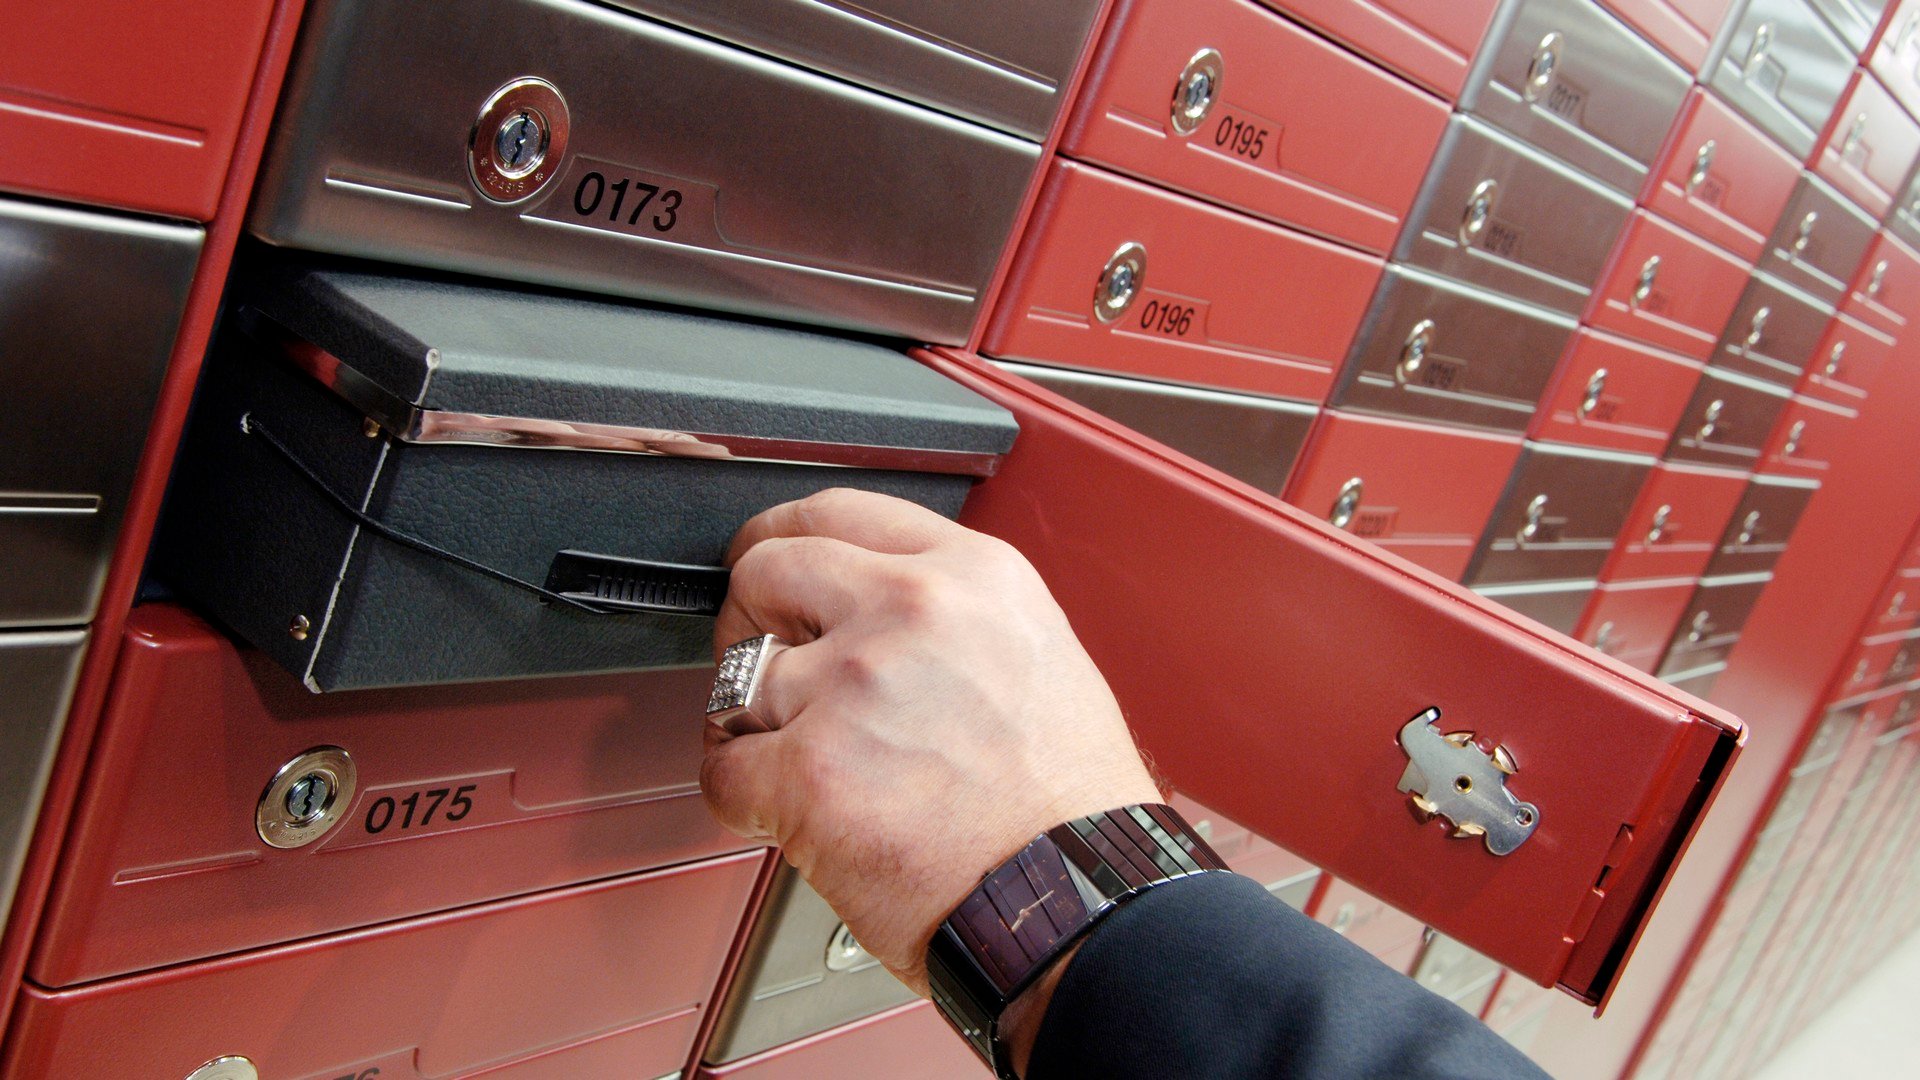 Mechanical safe deposit boxes